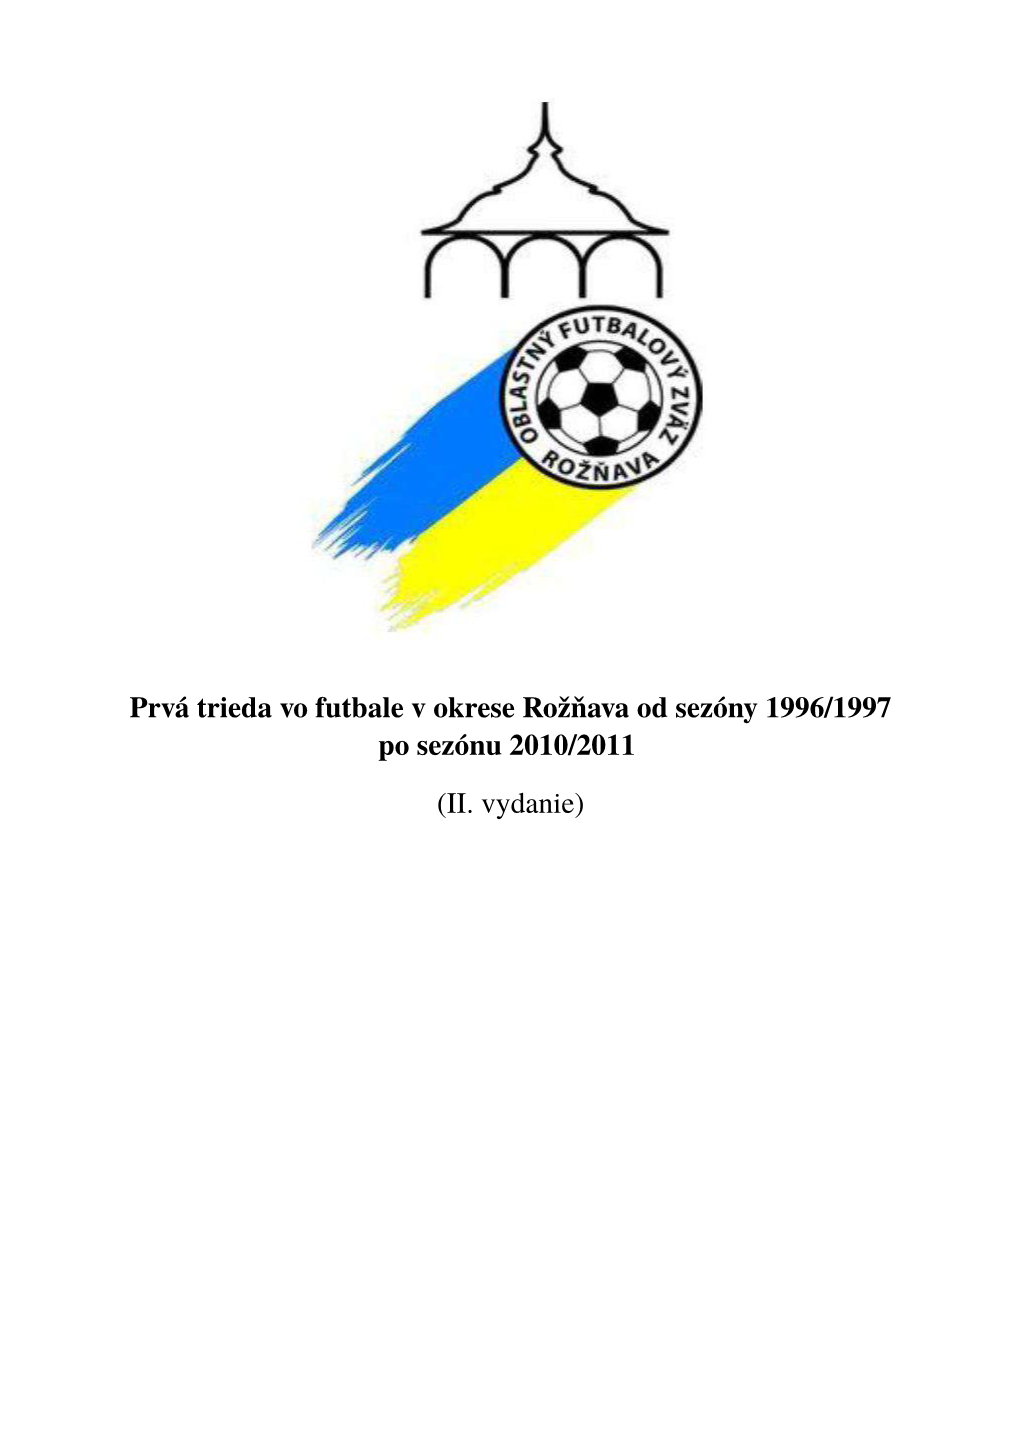 Prvá Trieda Vo Futbale V Okrese Rožňava Od Sezóny 1996/1997 Po Sezónu 2010/2011 (II